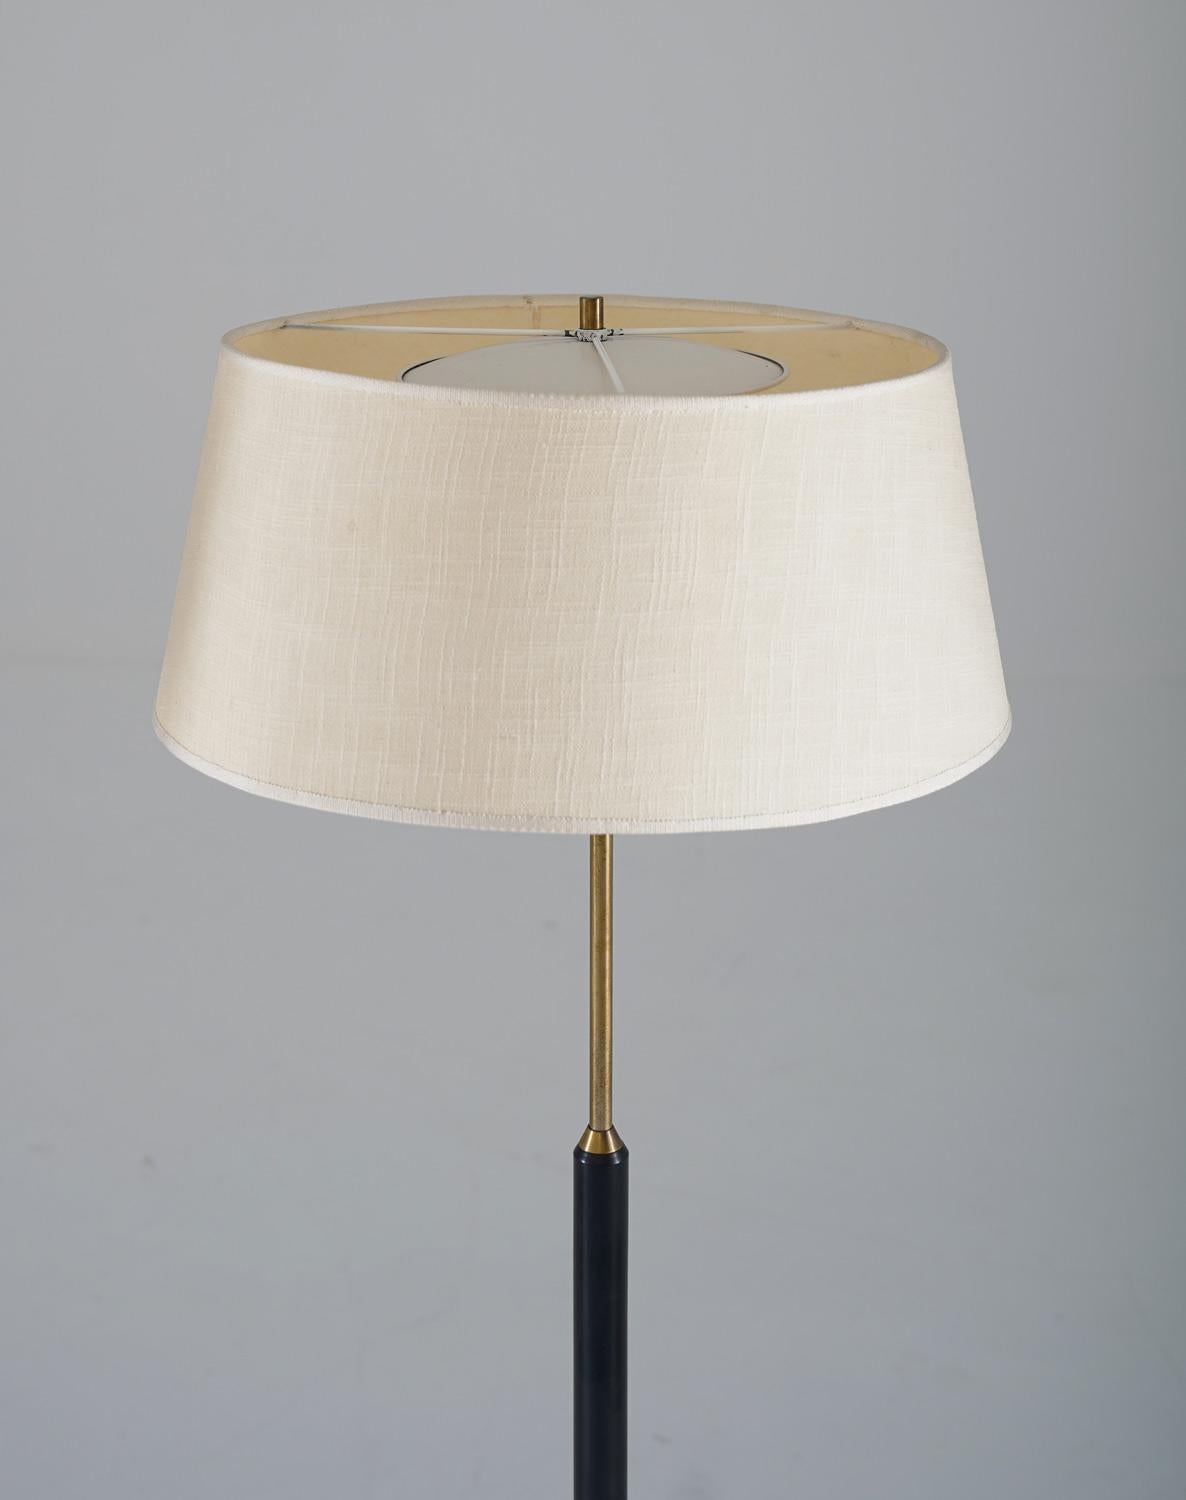 Swedish Scandinavian Midcentury Floor Lamps in Brass and Wood by Bergboms, Sweden